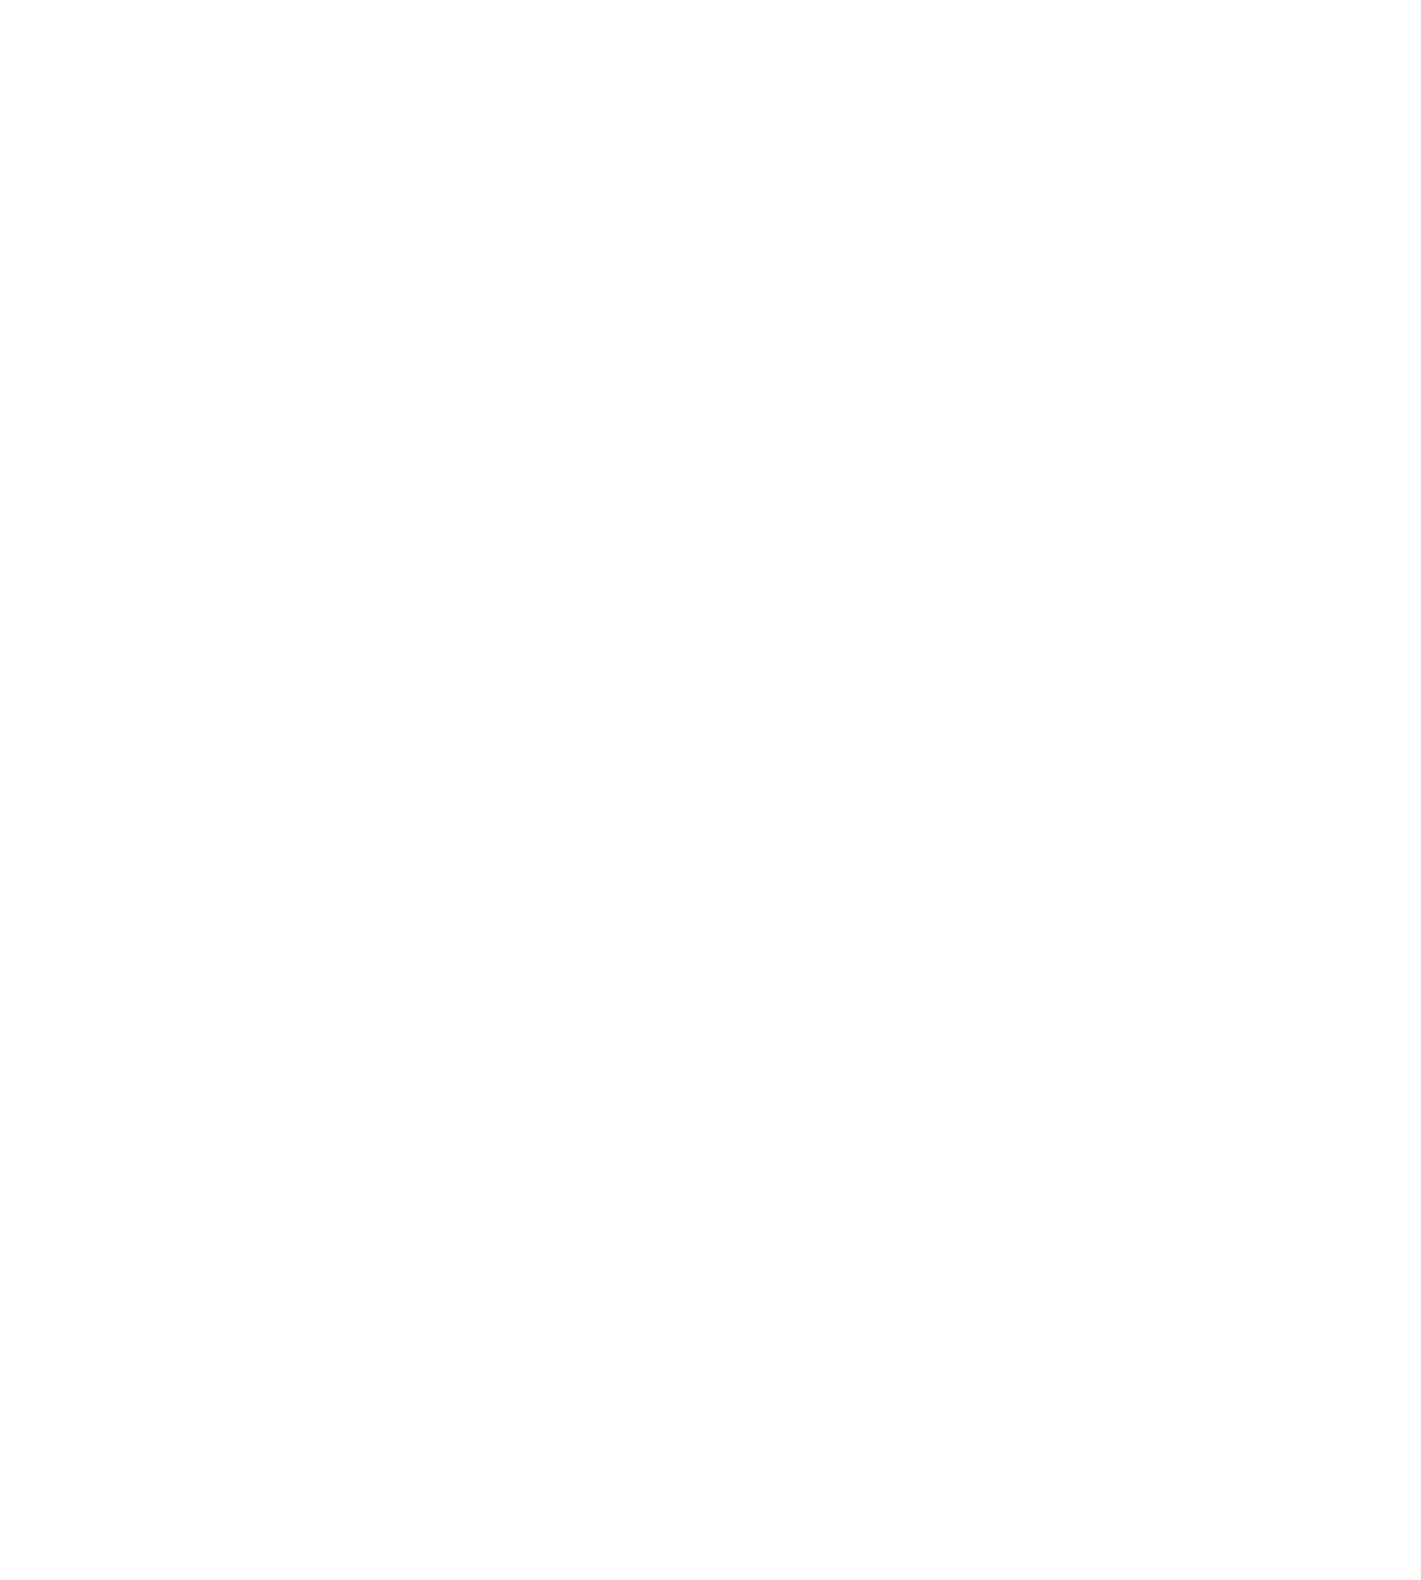 Heavenblastore